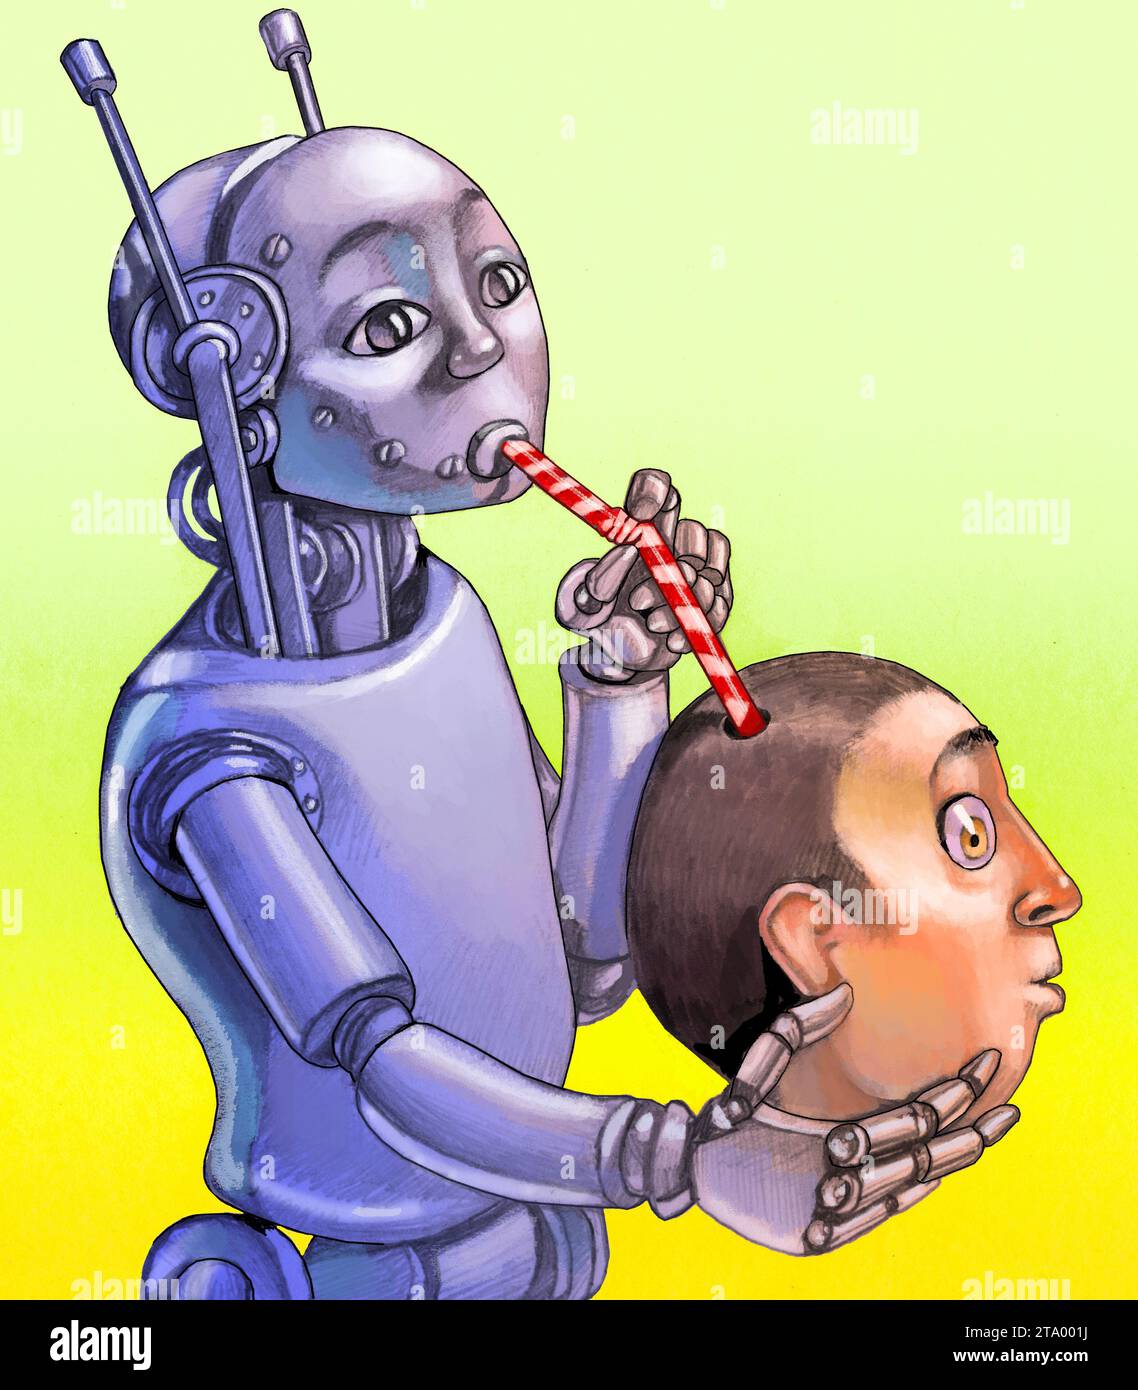 Ein Roboter kommt aus dem Kopf eines Menschen, indem er sich seinen Verstand aneignet, eine Metapher für die Ausbeutung menschlicher Kreativität durch diejenigen, die künstliche Kontrolle haben Stockfoto